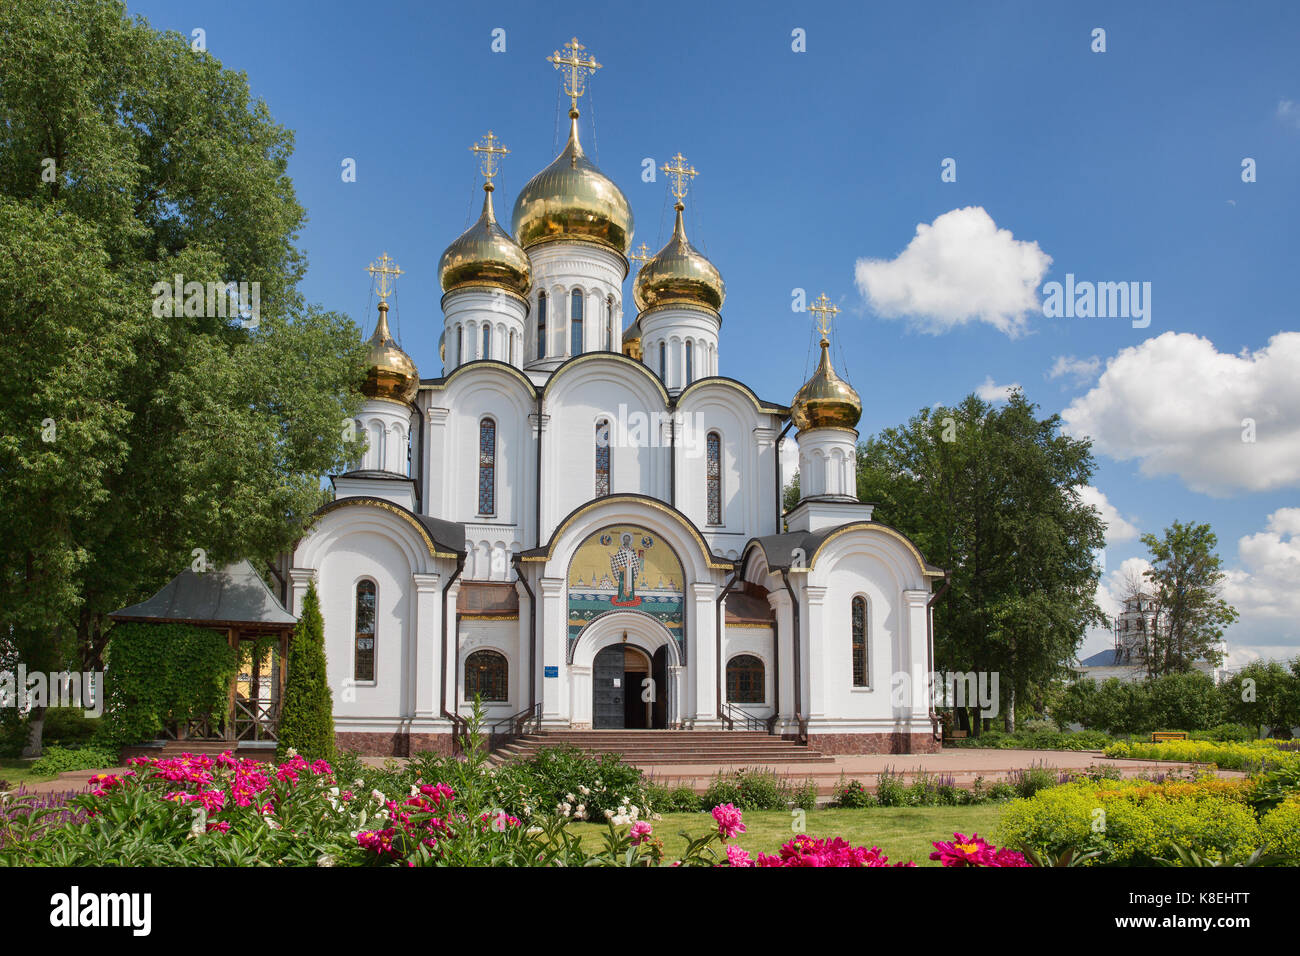 Nikolsky Cathedral. Pereslavl-Zalesskiy. Russia Stock Photo